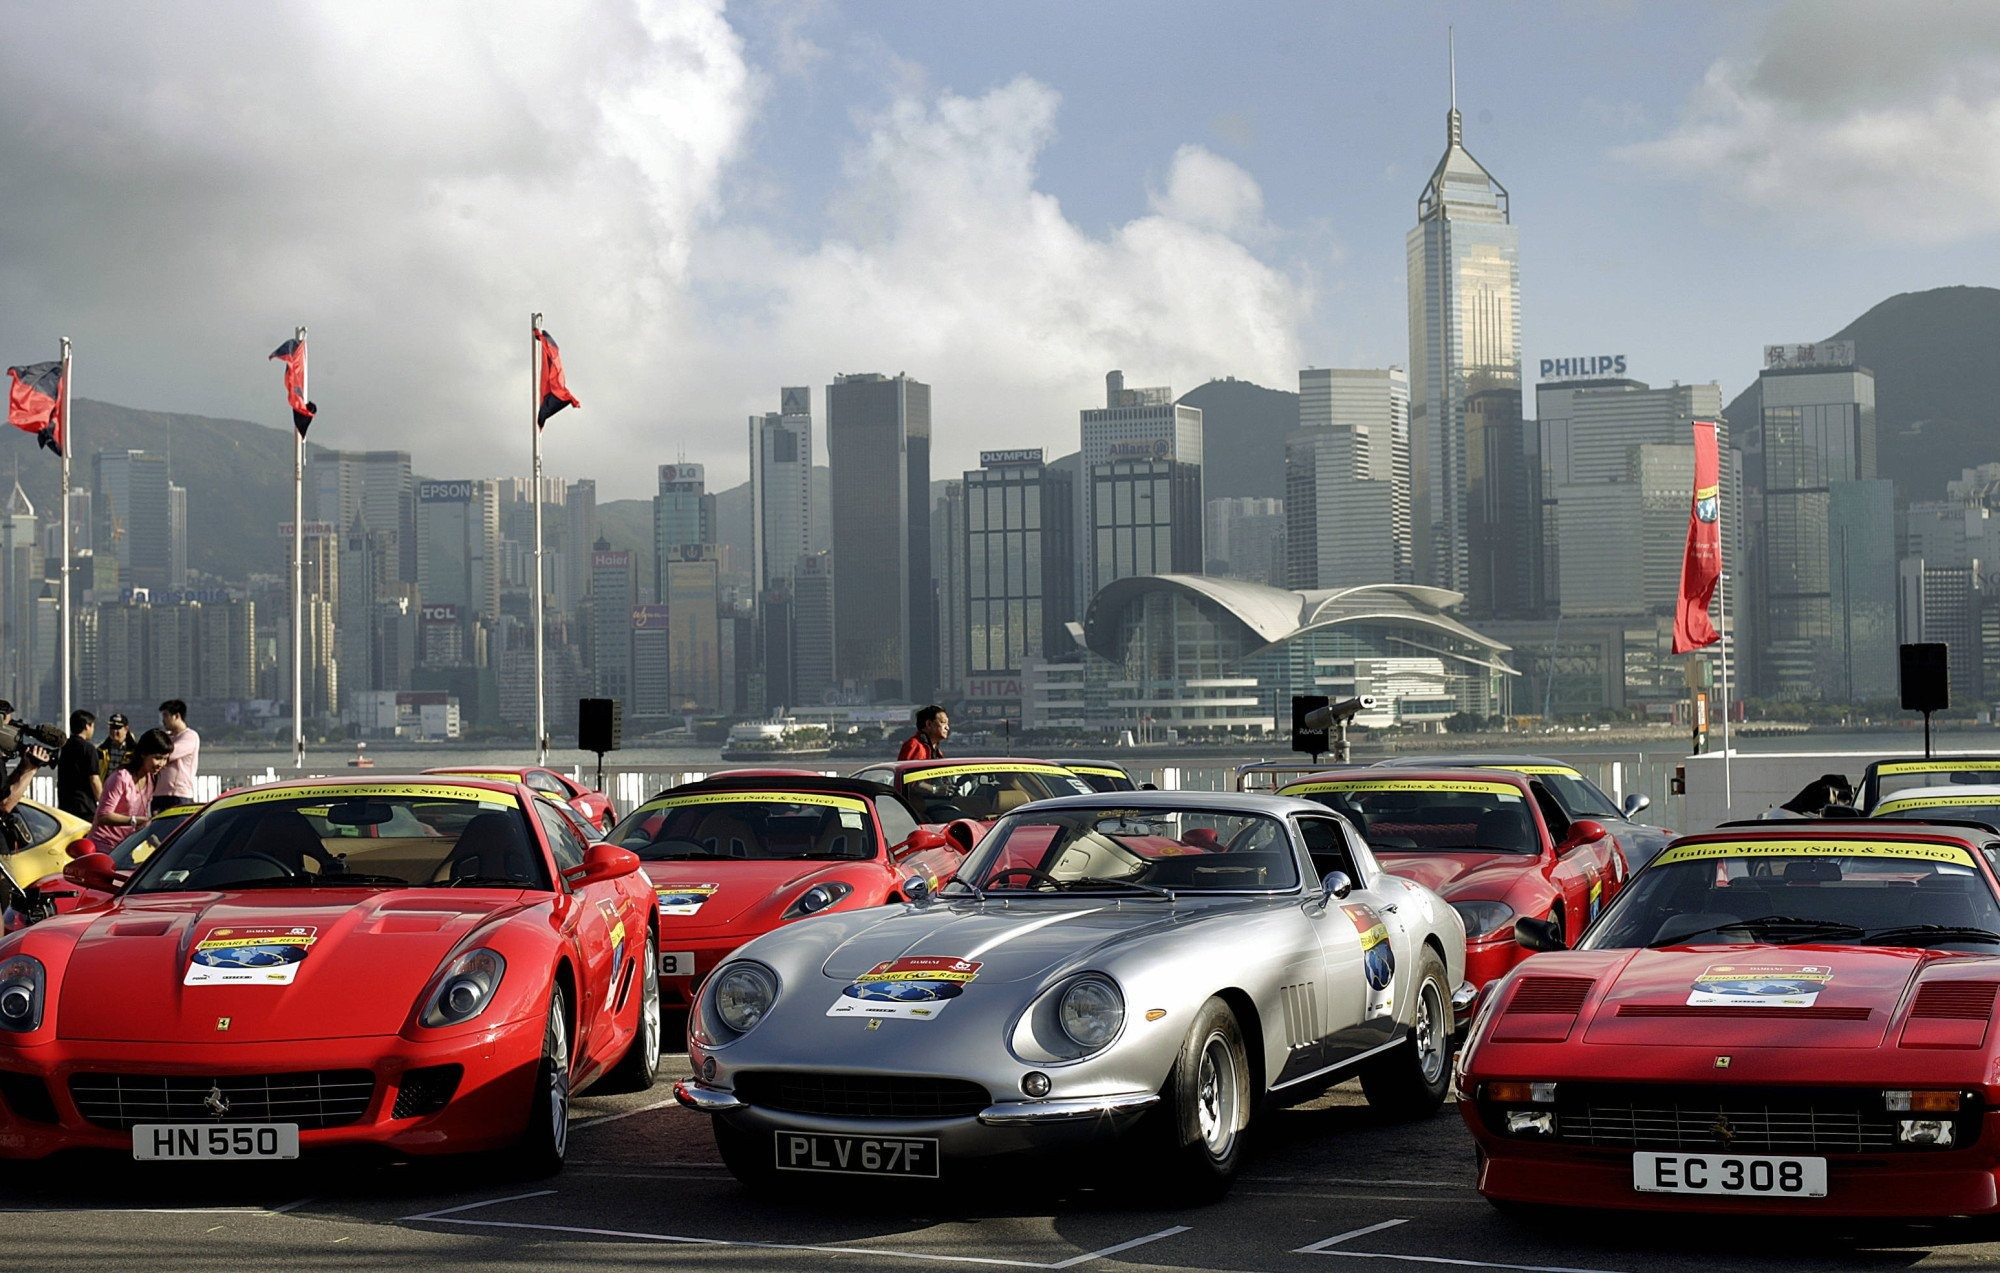 Siêu xe Ferrari nhắm đến phụ nữ giàu có Trung Quốc - Ảnh 2.